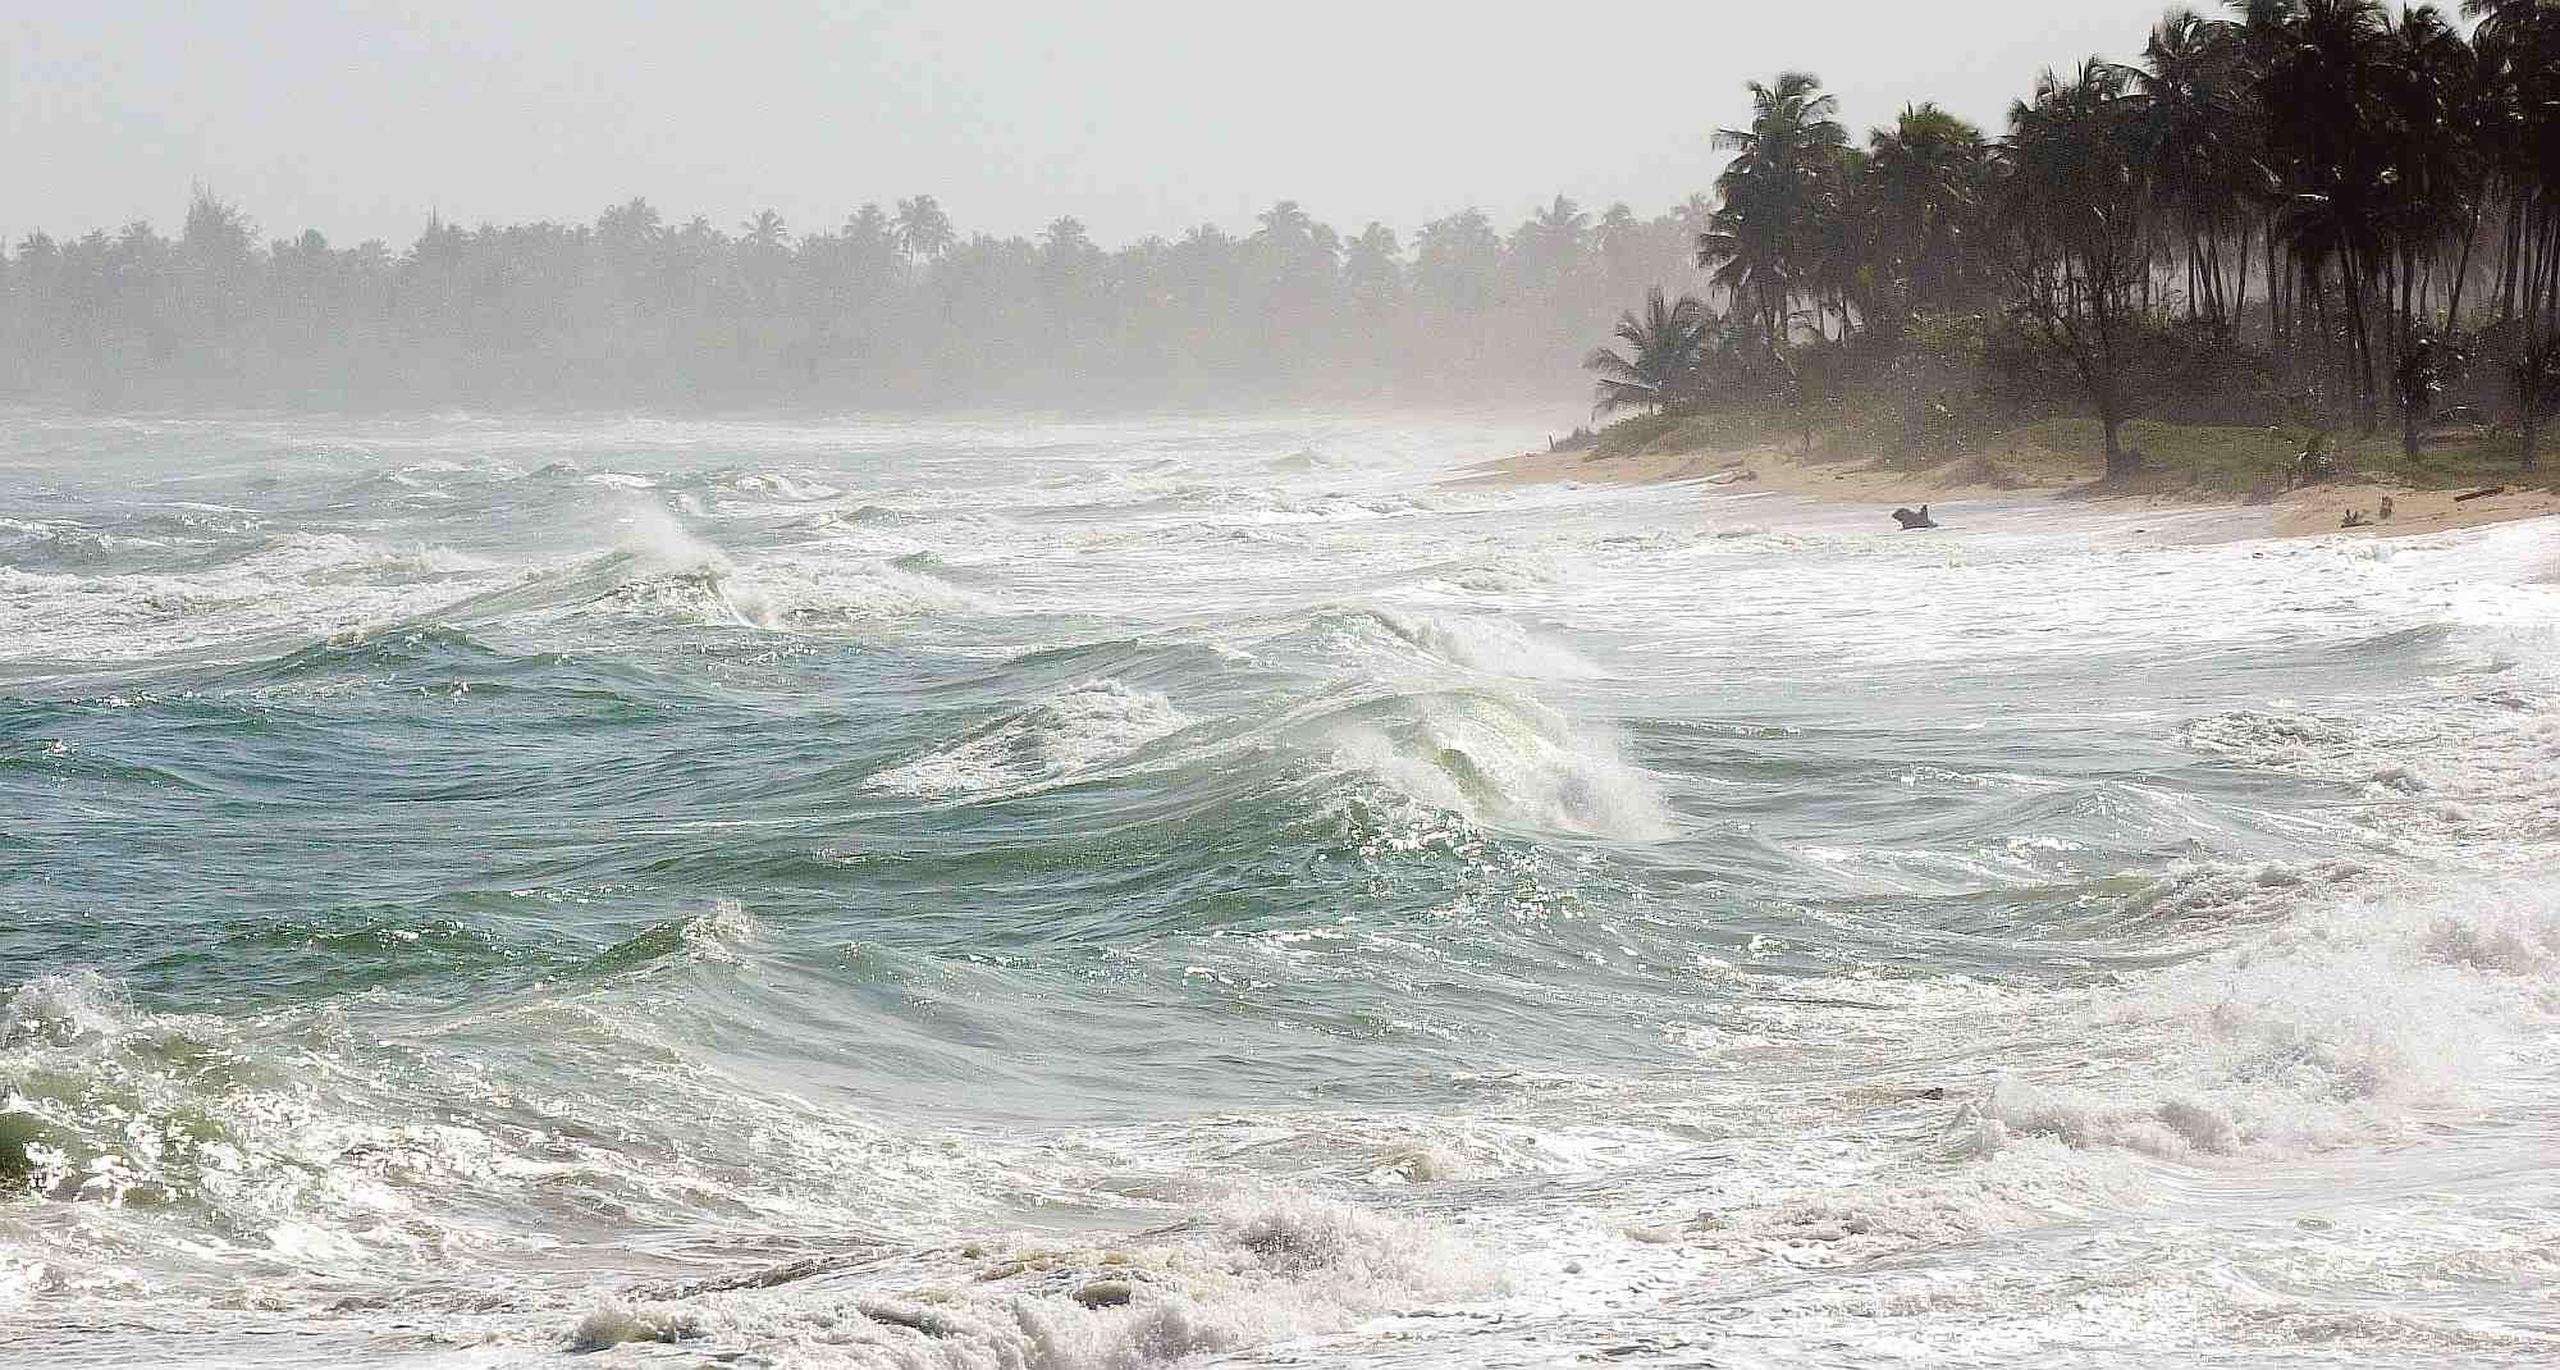 El mar picado es consecuencia de los vientos que se registran entre 20 y 25 millas por horas. (Archivo/GFR)